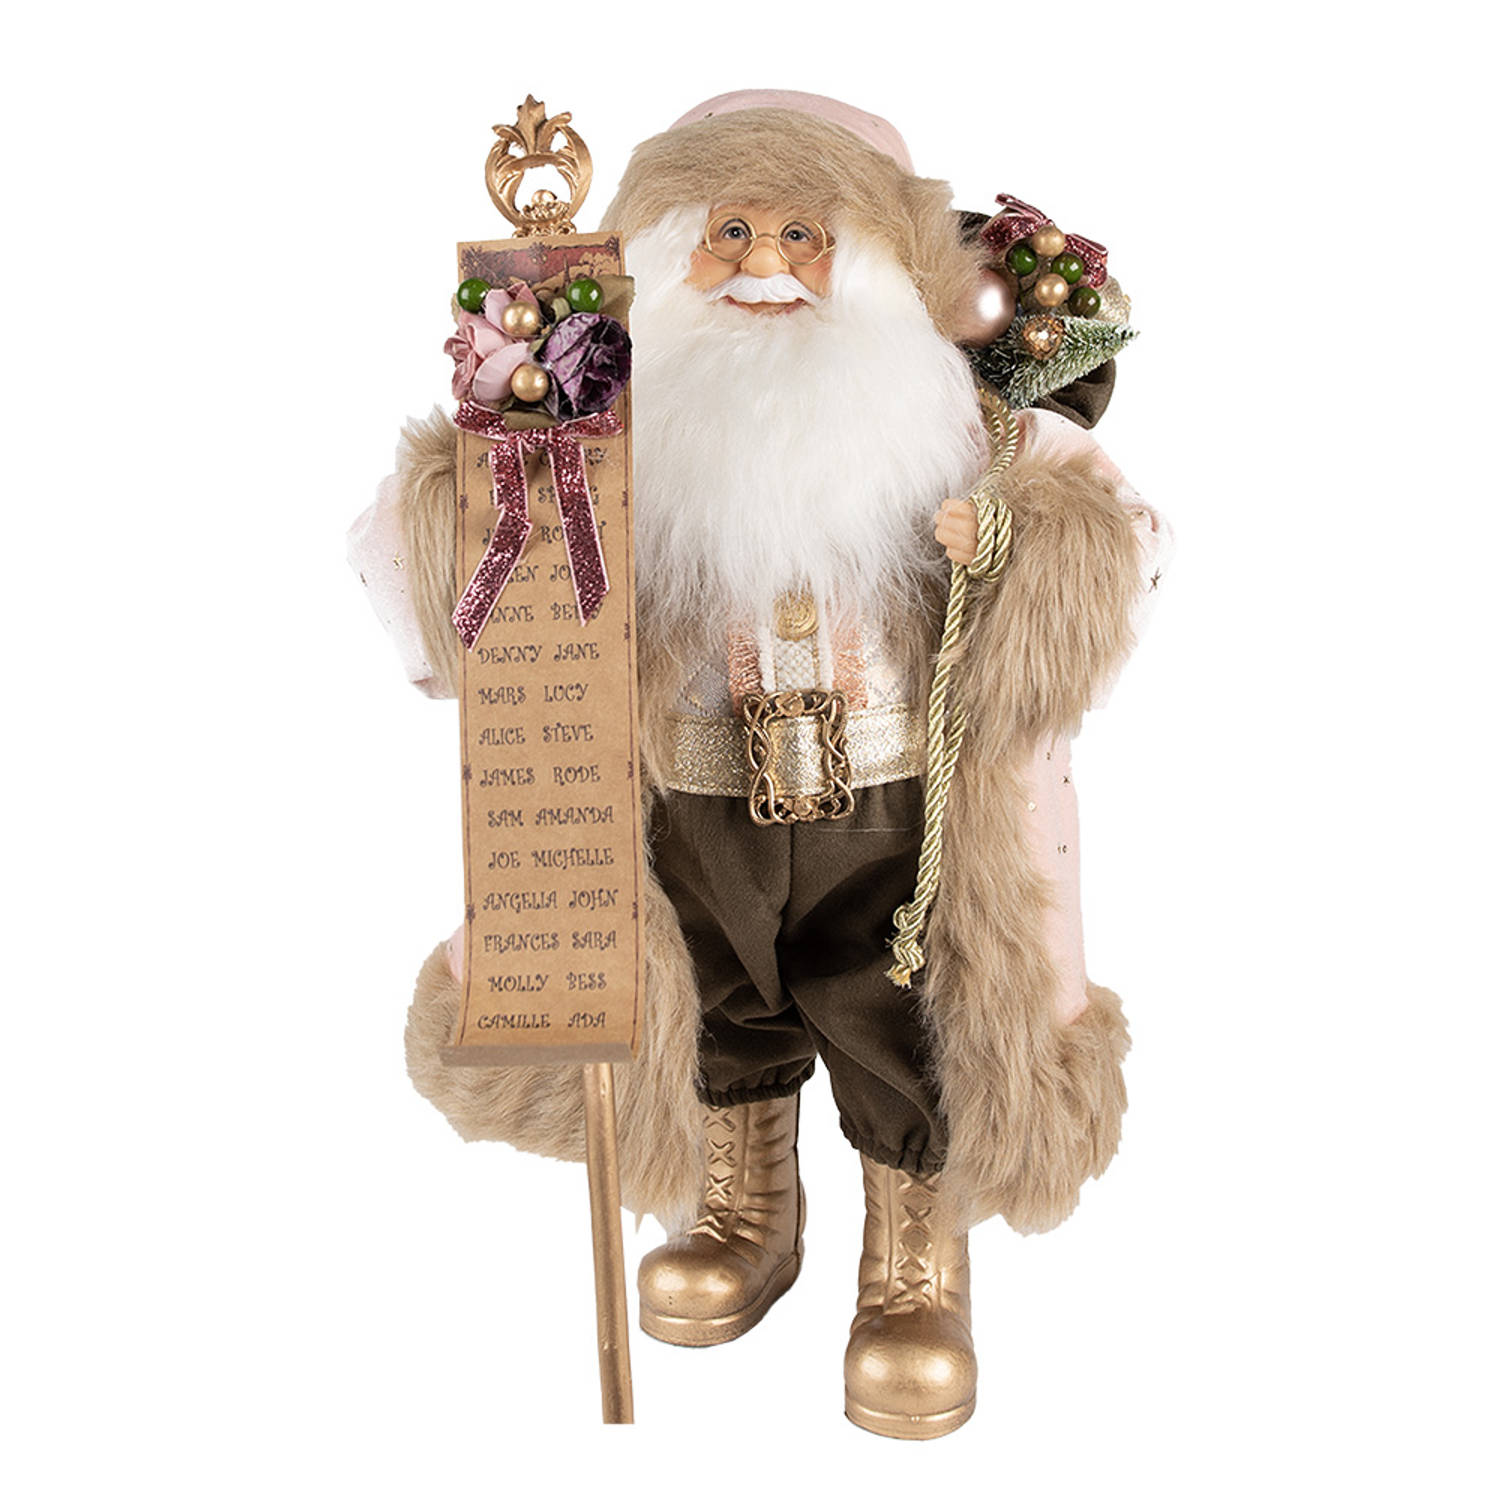 HAES DECO - Kerstman deco Figuur - Formaat 22x19x47 cm - Collectie: Traditional Santa - Kleur Roze - Materiaal Textiel op kunststof - Kerst Figuur, Kerstdecoratie